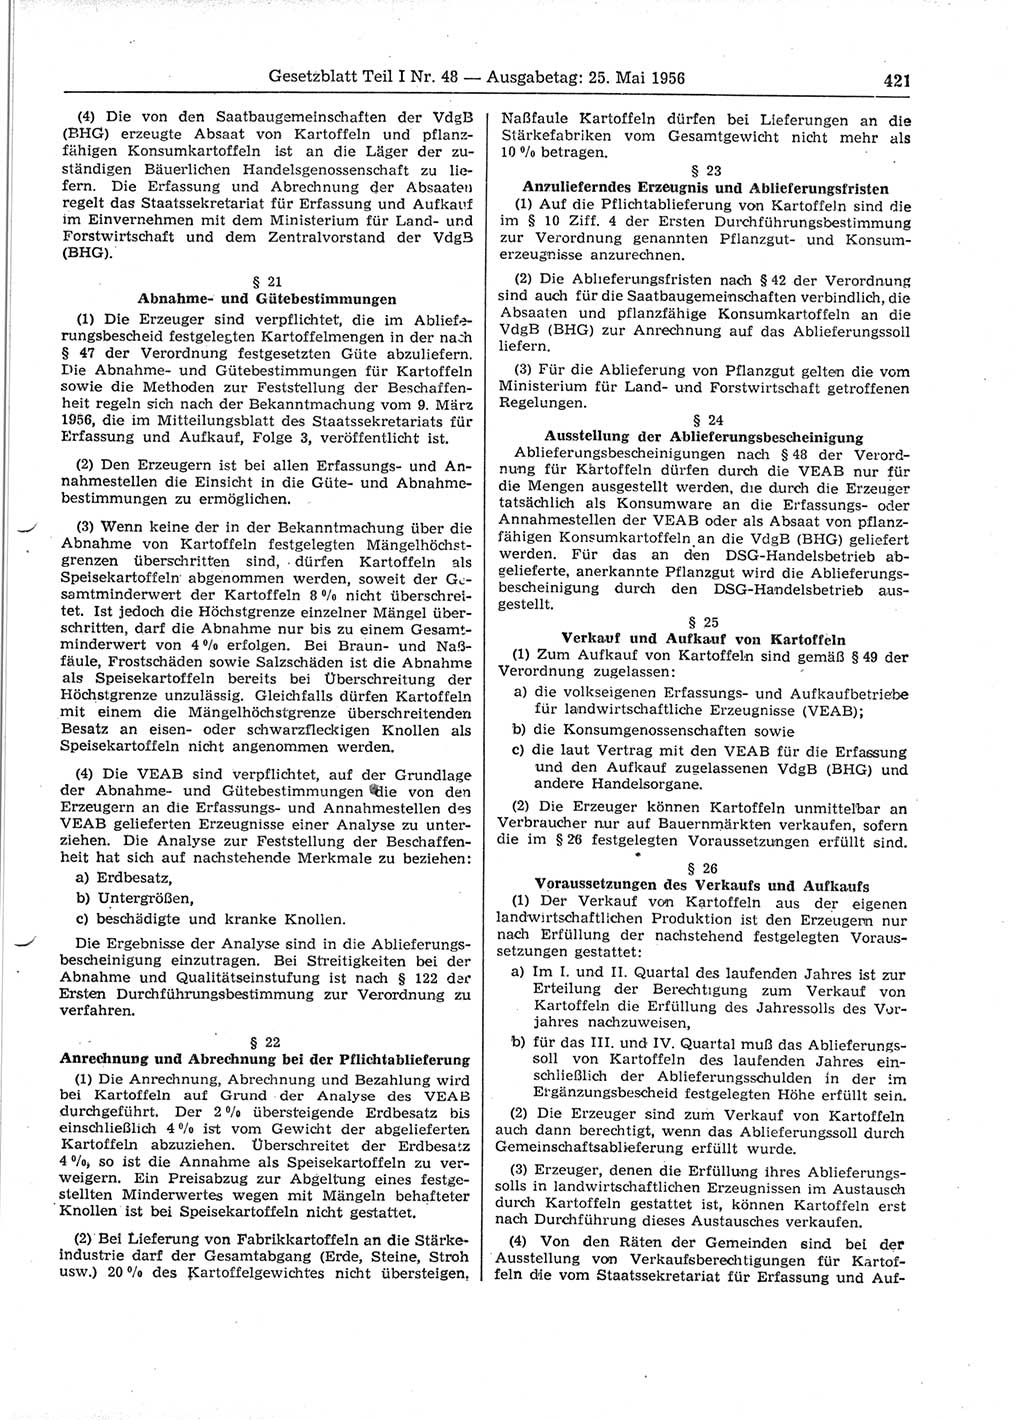 Gesetzblatt (GBl.) der Deutschen Demokratischen Republik (DDR) Teil Ⅰ 1956, Seite 421 (GBl. DDR Ⅰ 1956, S. 421)